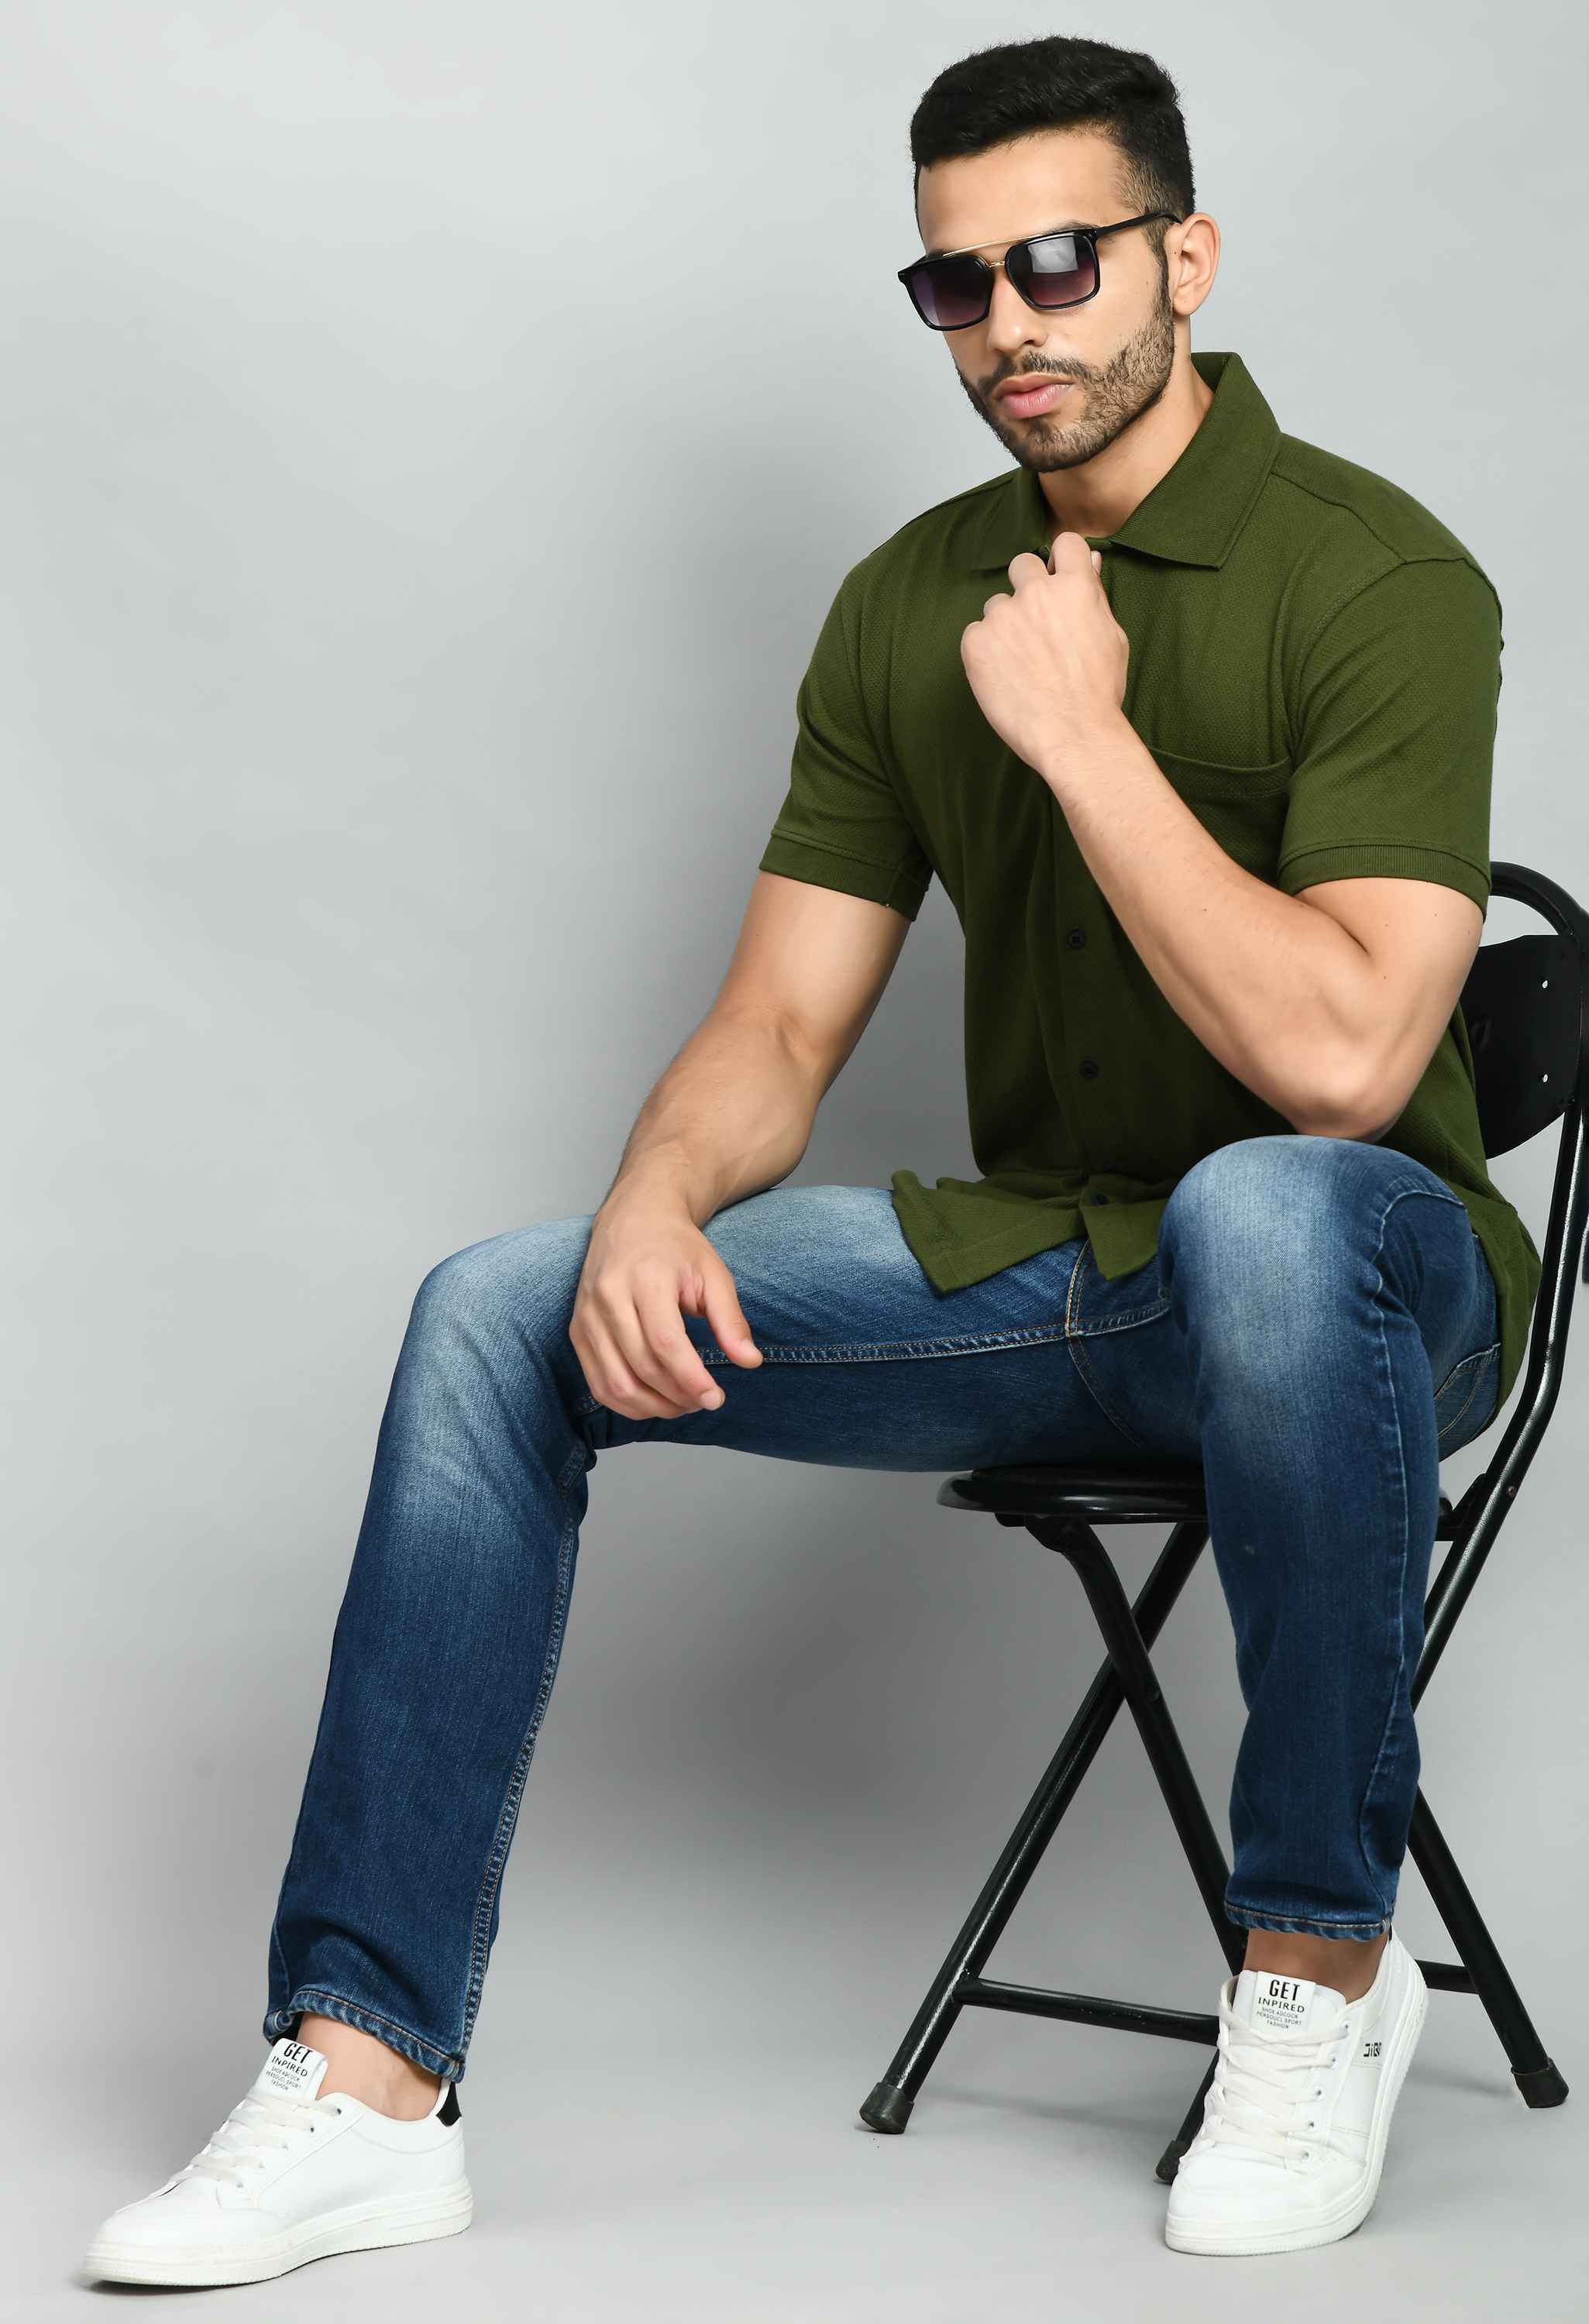 Men's Olive Smart Fit Solid Shirt